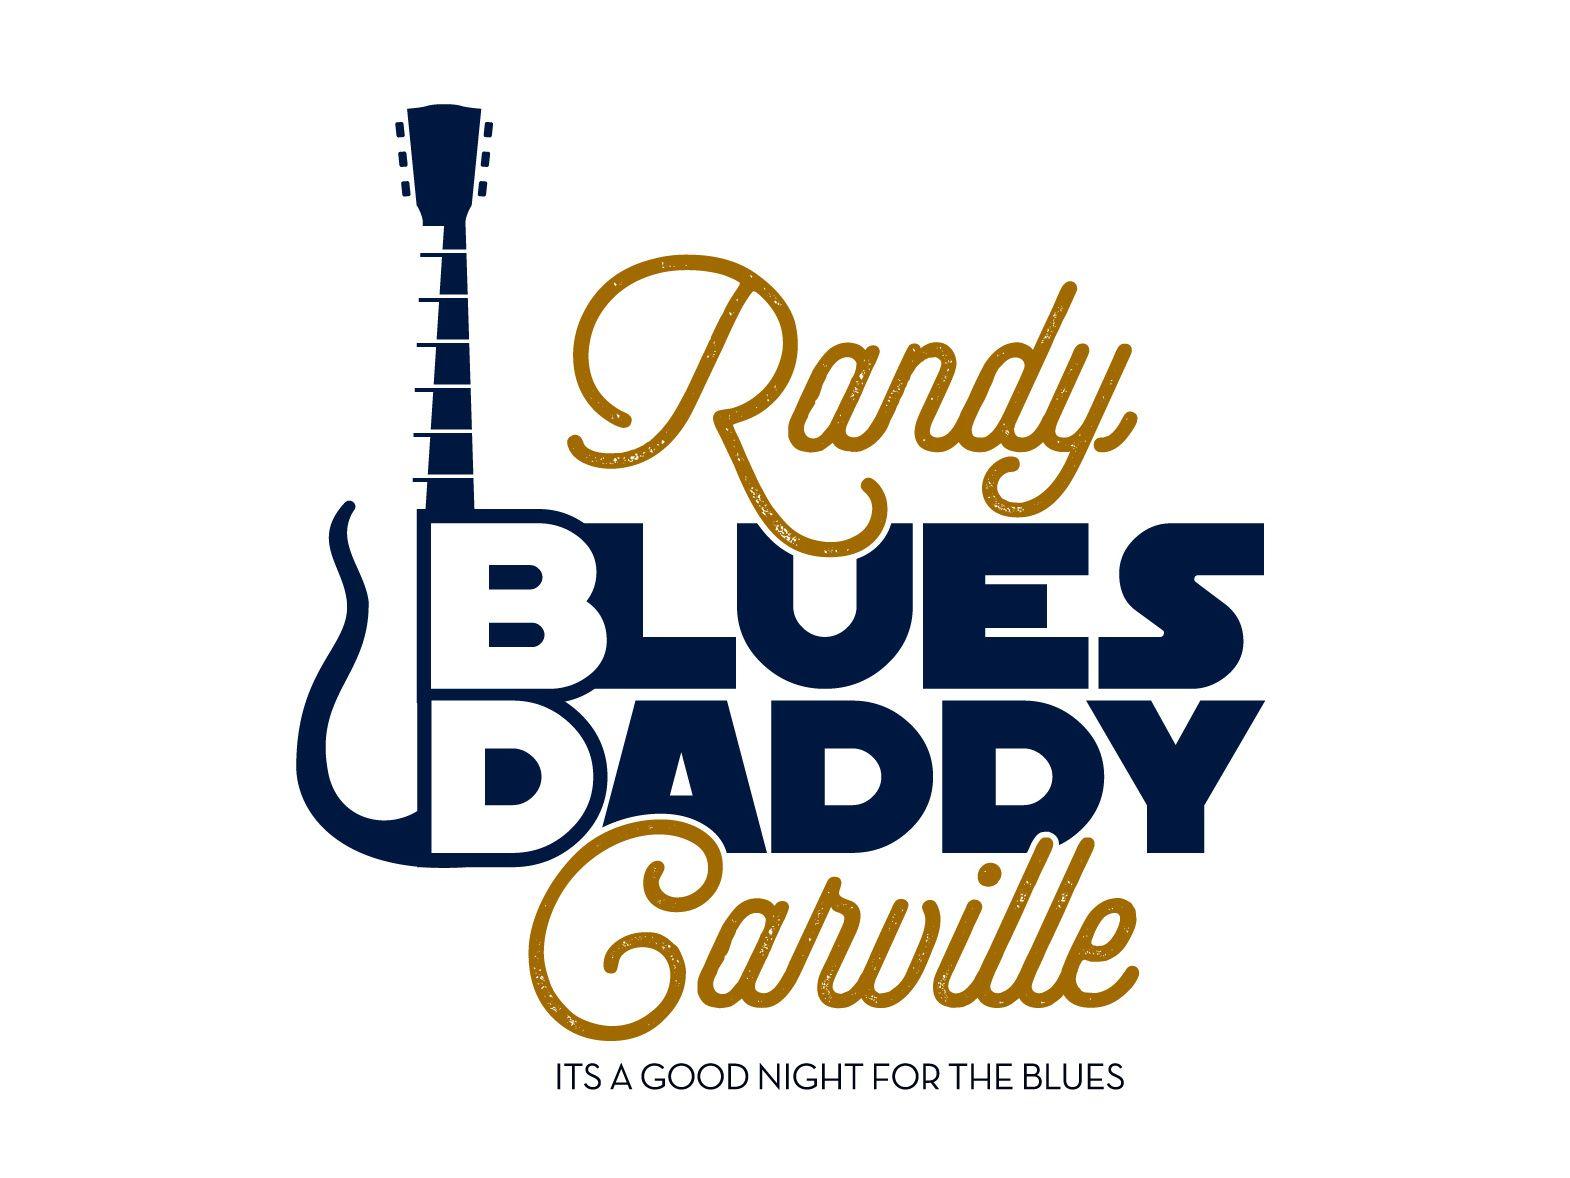 Randy Logo - Randy Blues Daddy by Waqar Khan on Dribbble